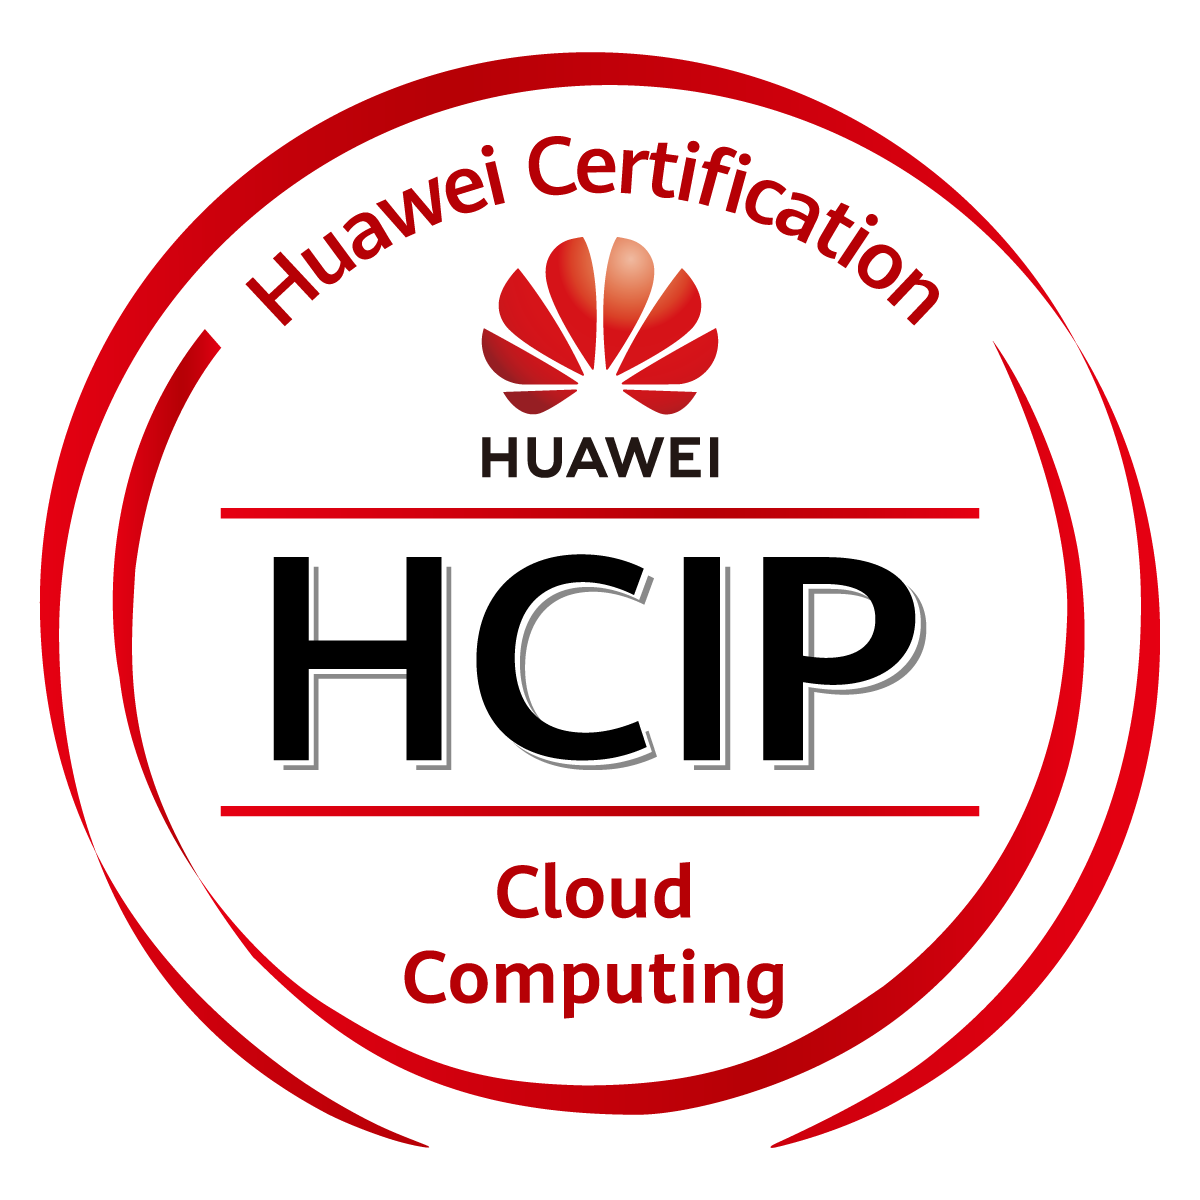 HCIP-Cloud Computing-OpenStack